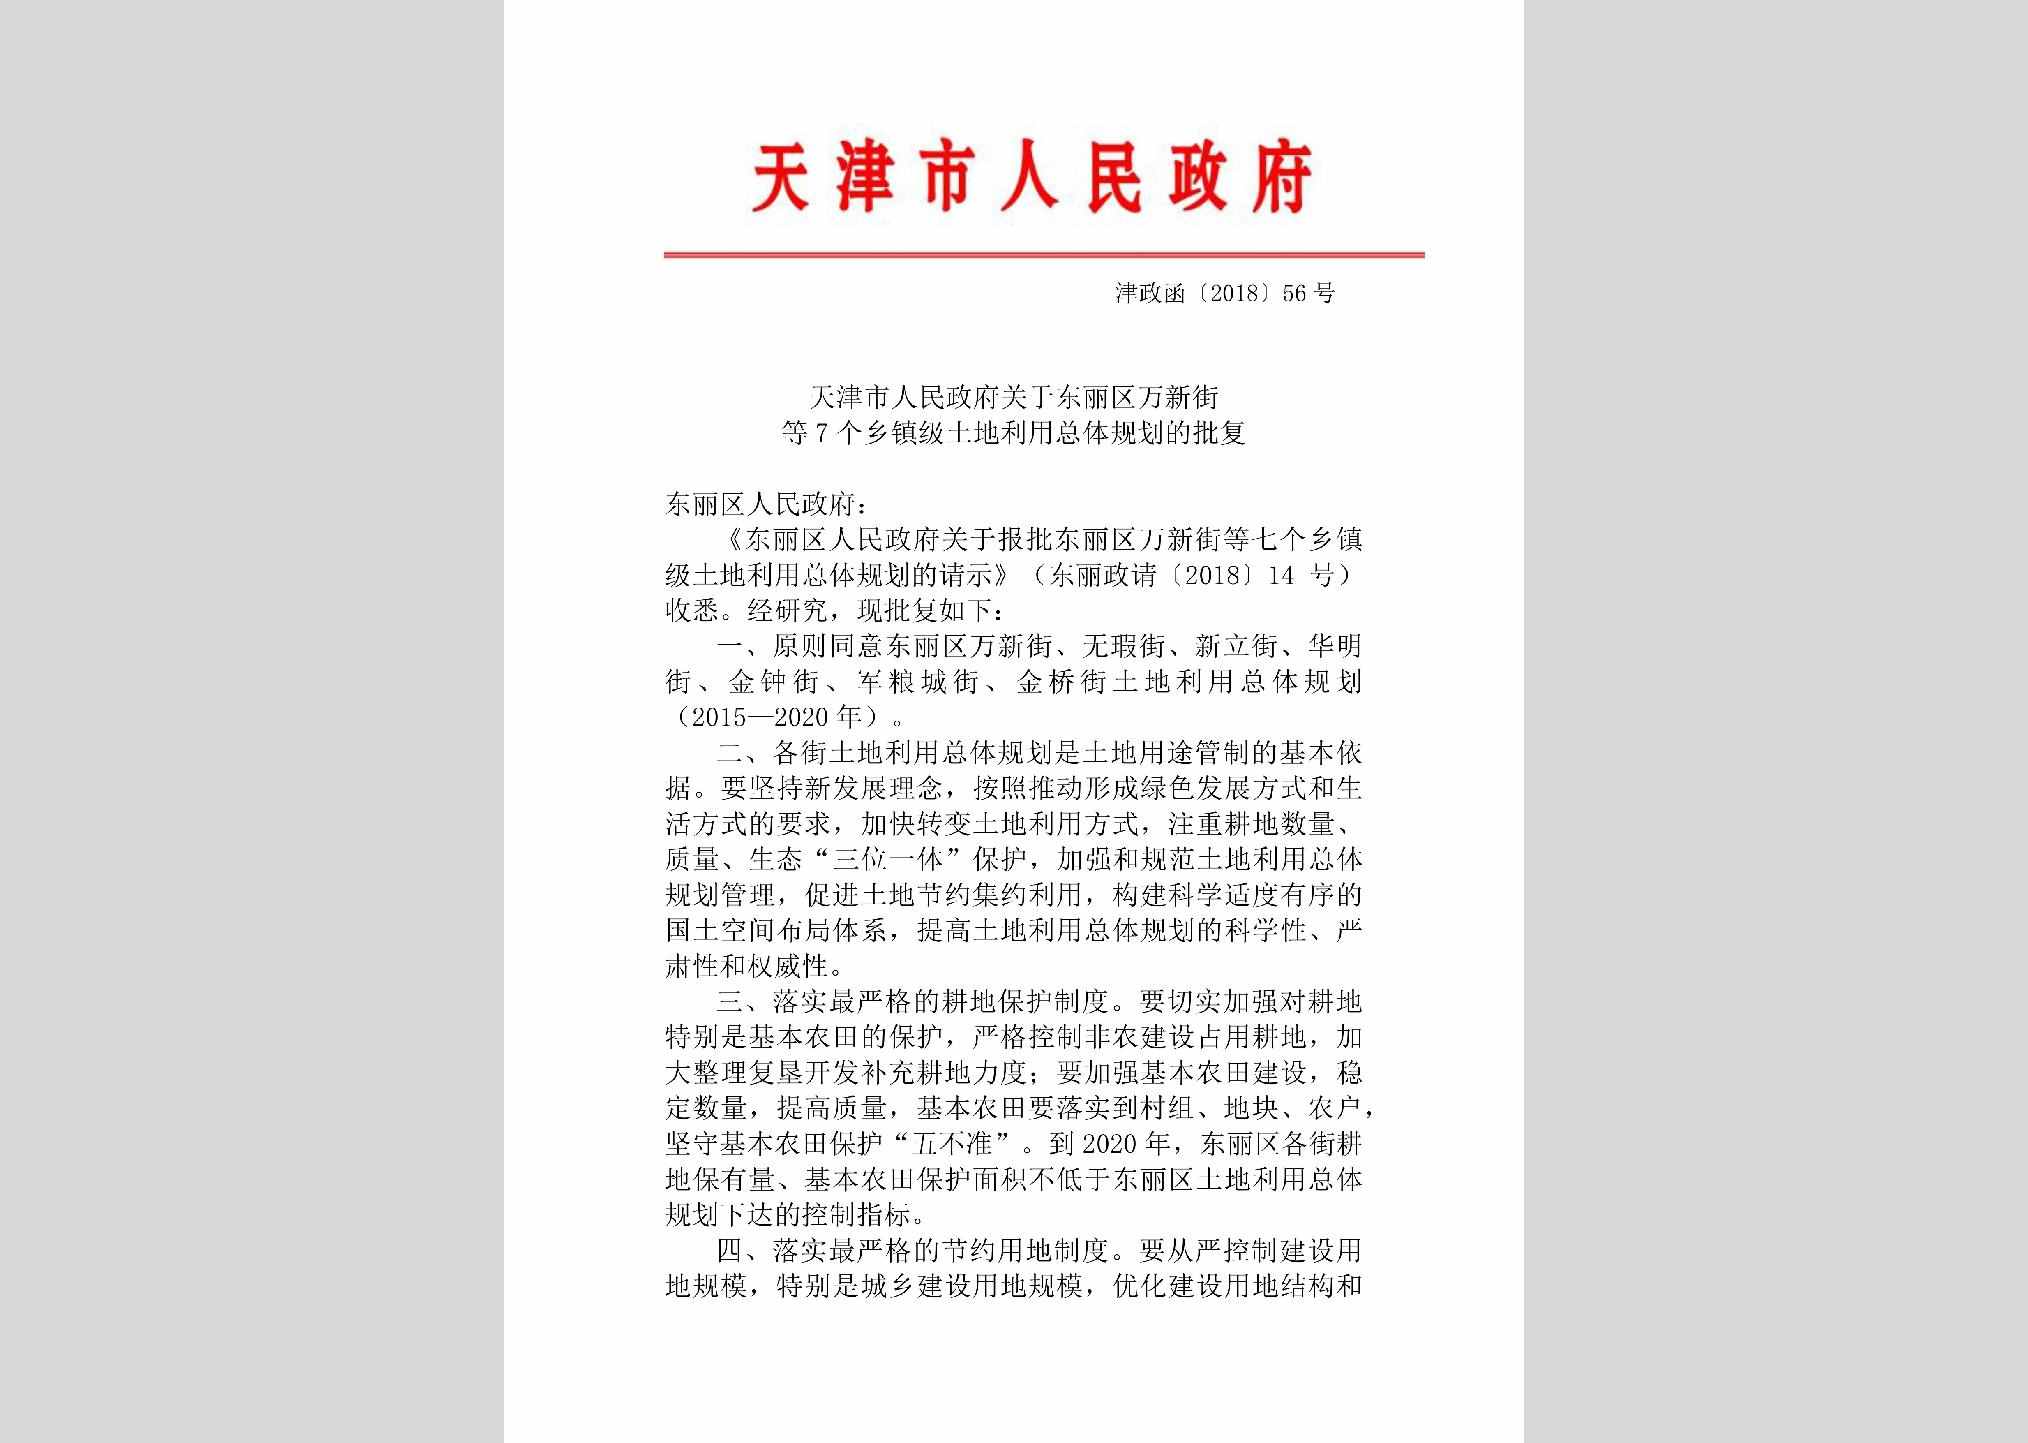 津政函[2018]56号：天津市人民政府关于东丽区万新街等7个乡镇级土地利用总体规划的批复